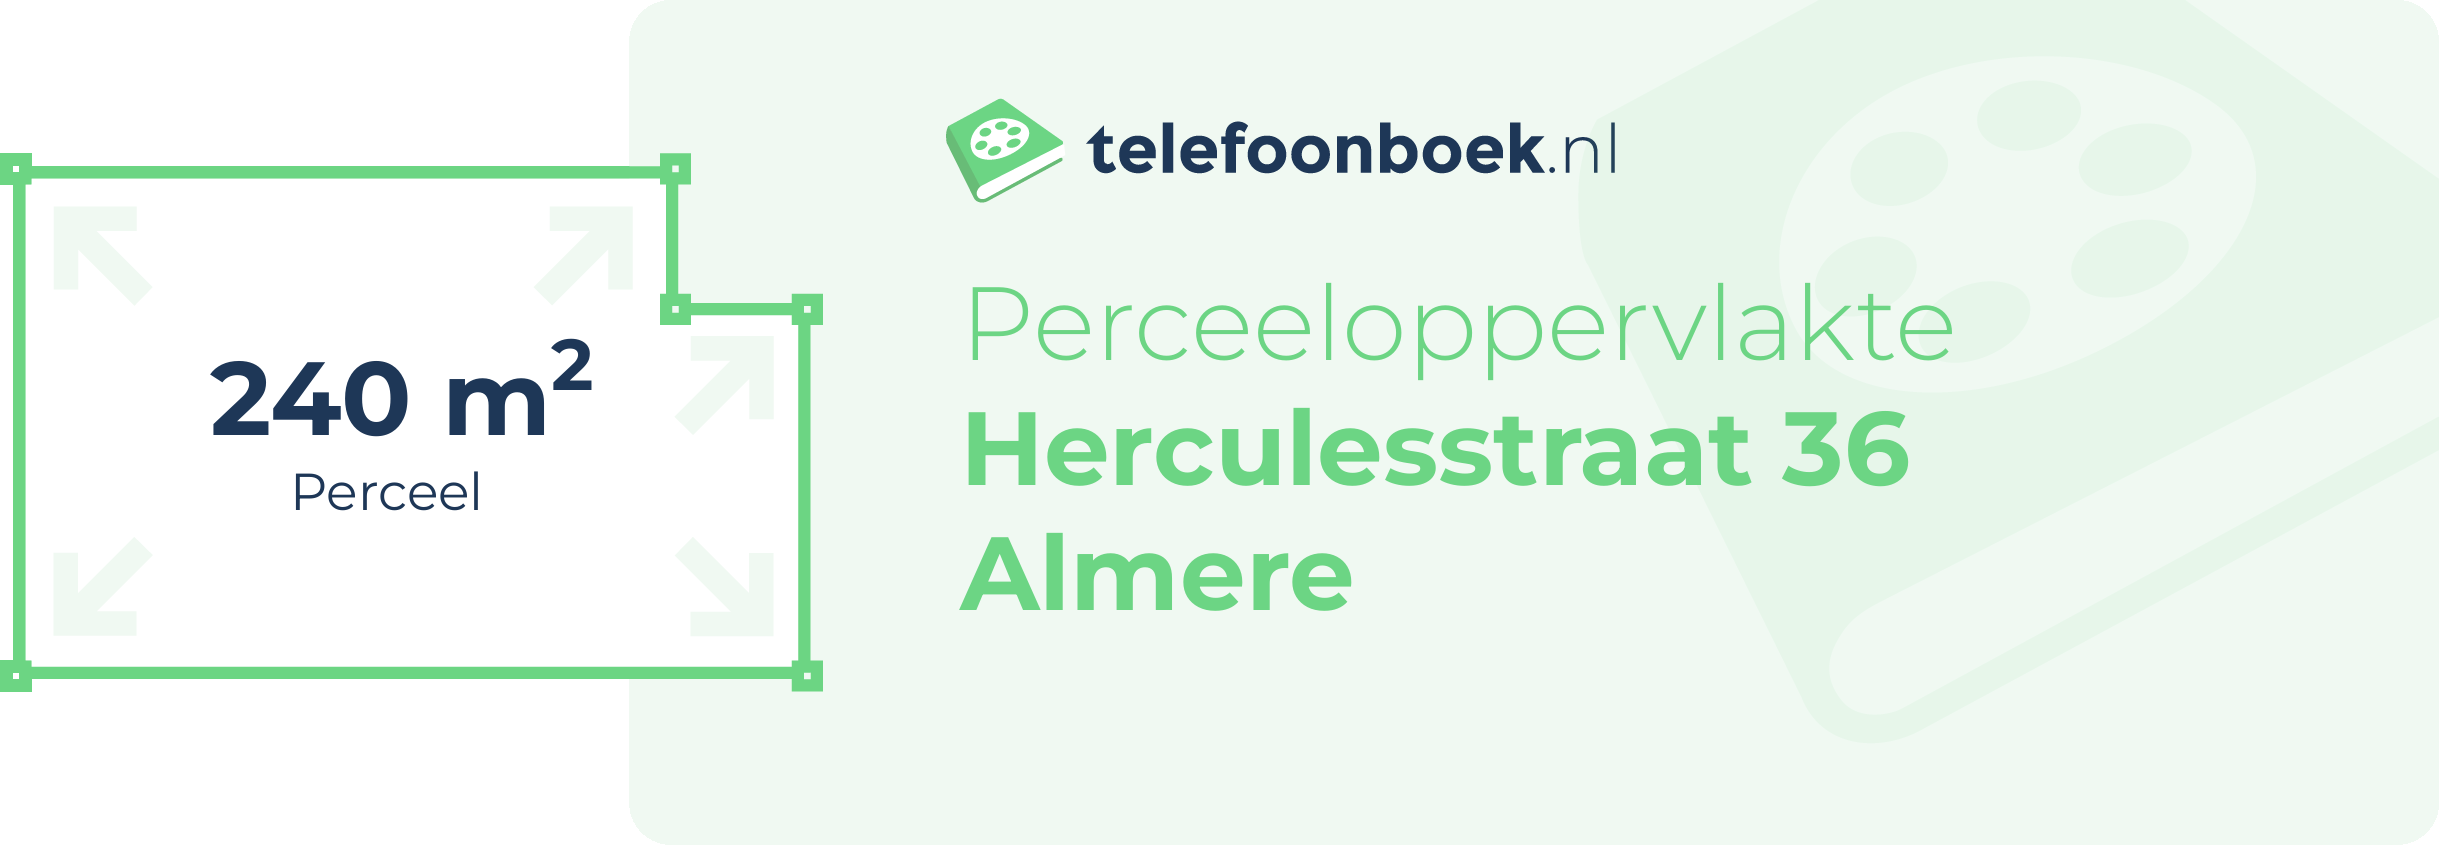 Perceeloppervlakte Herculesstraat 36 Almere